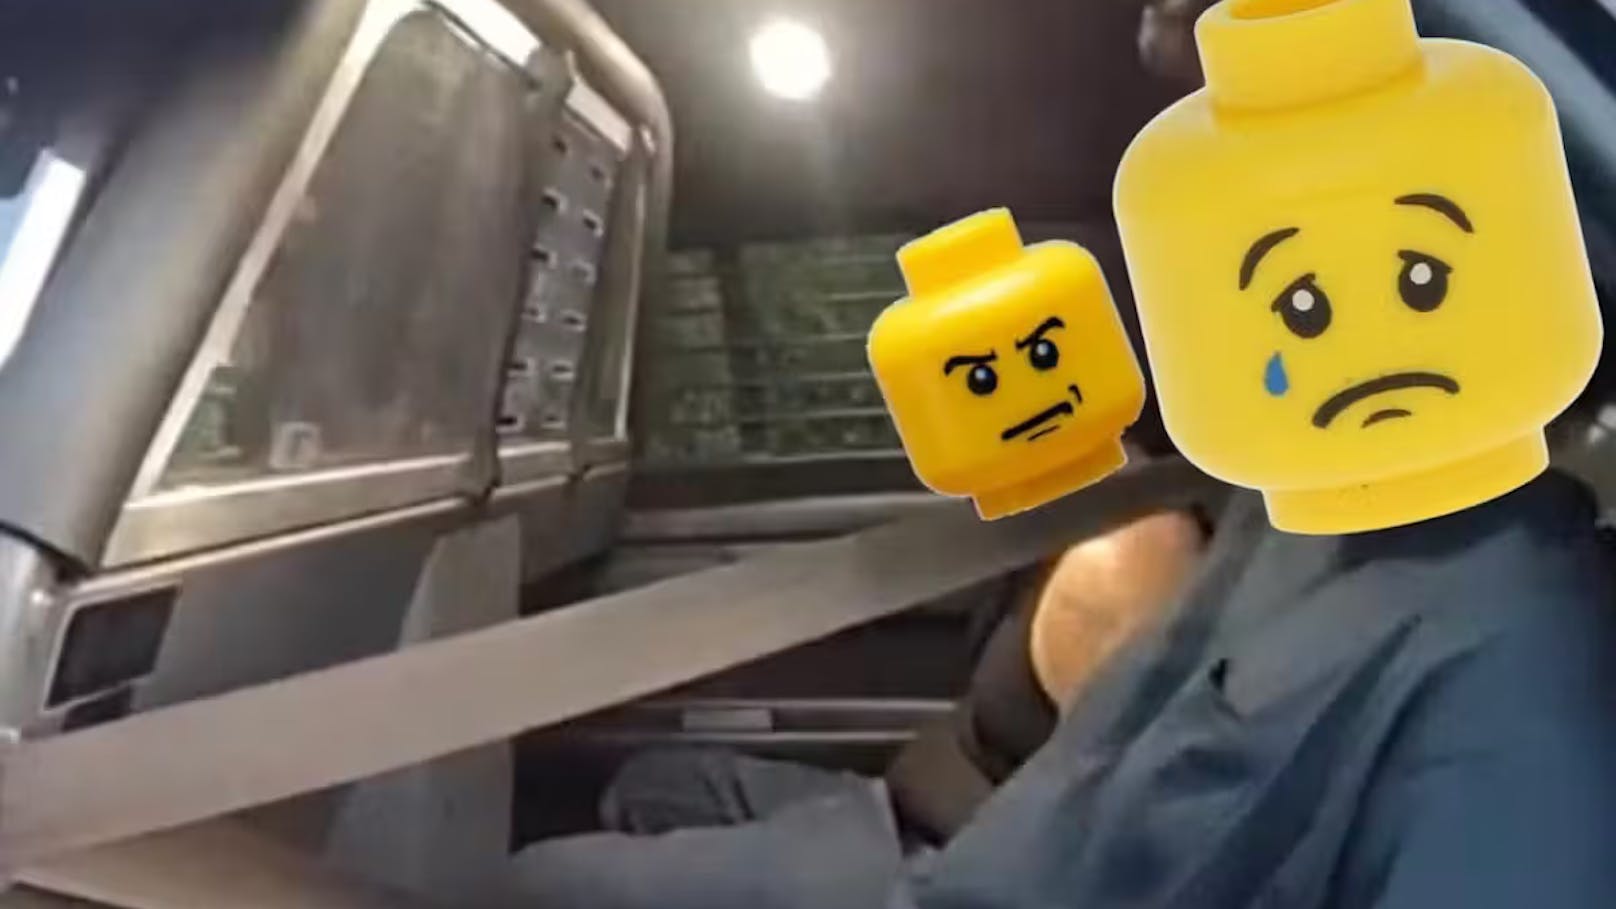 US-Polizei zeigt Verbrecher jetzt mit Lego-Köpfen